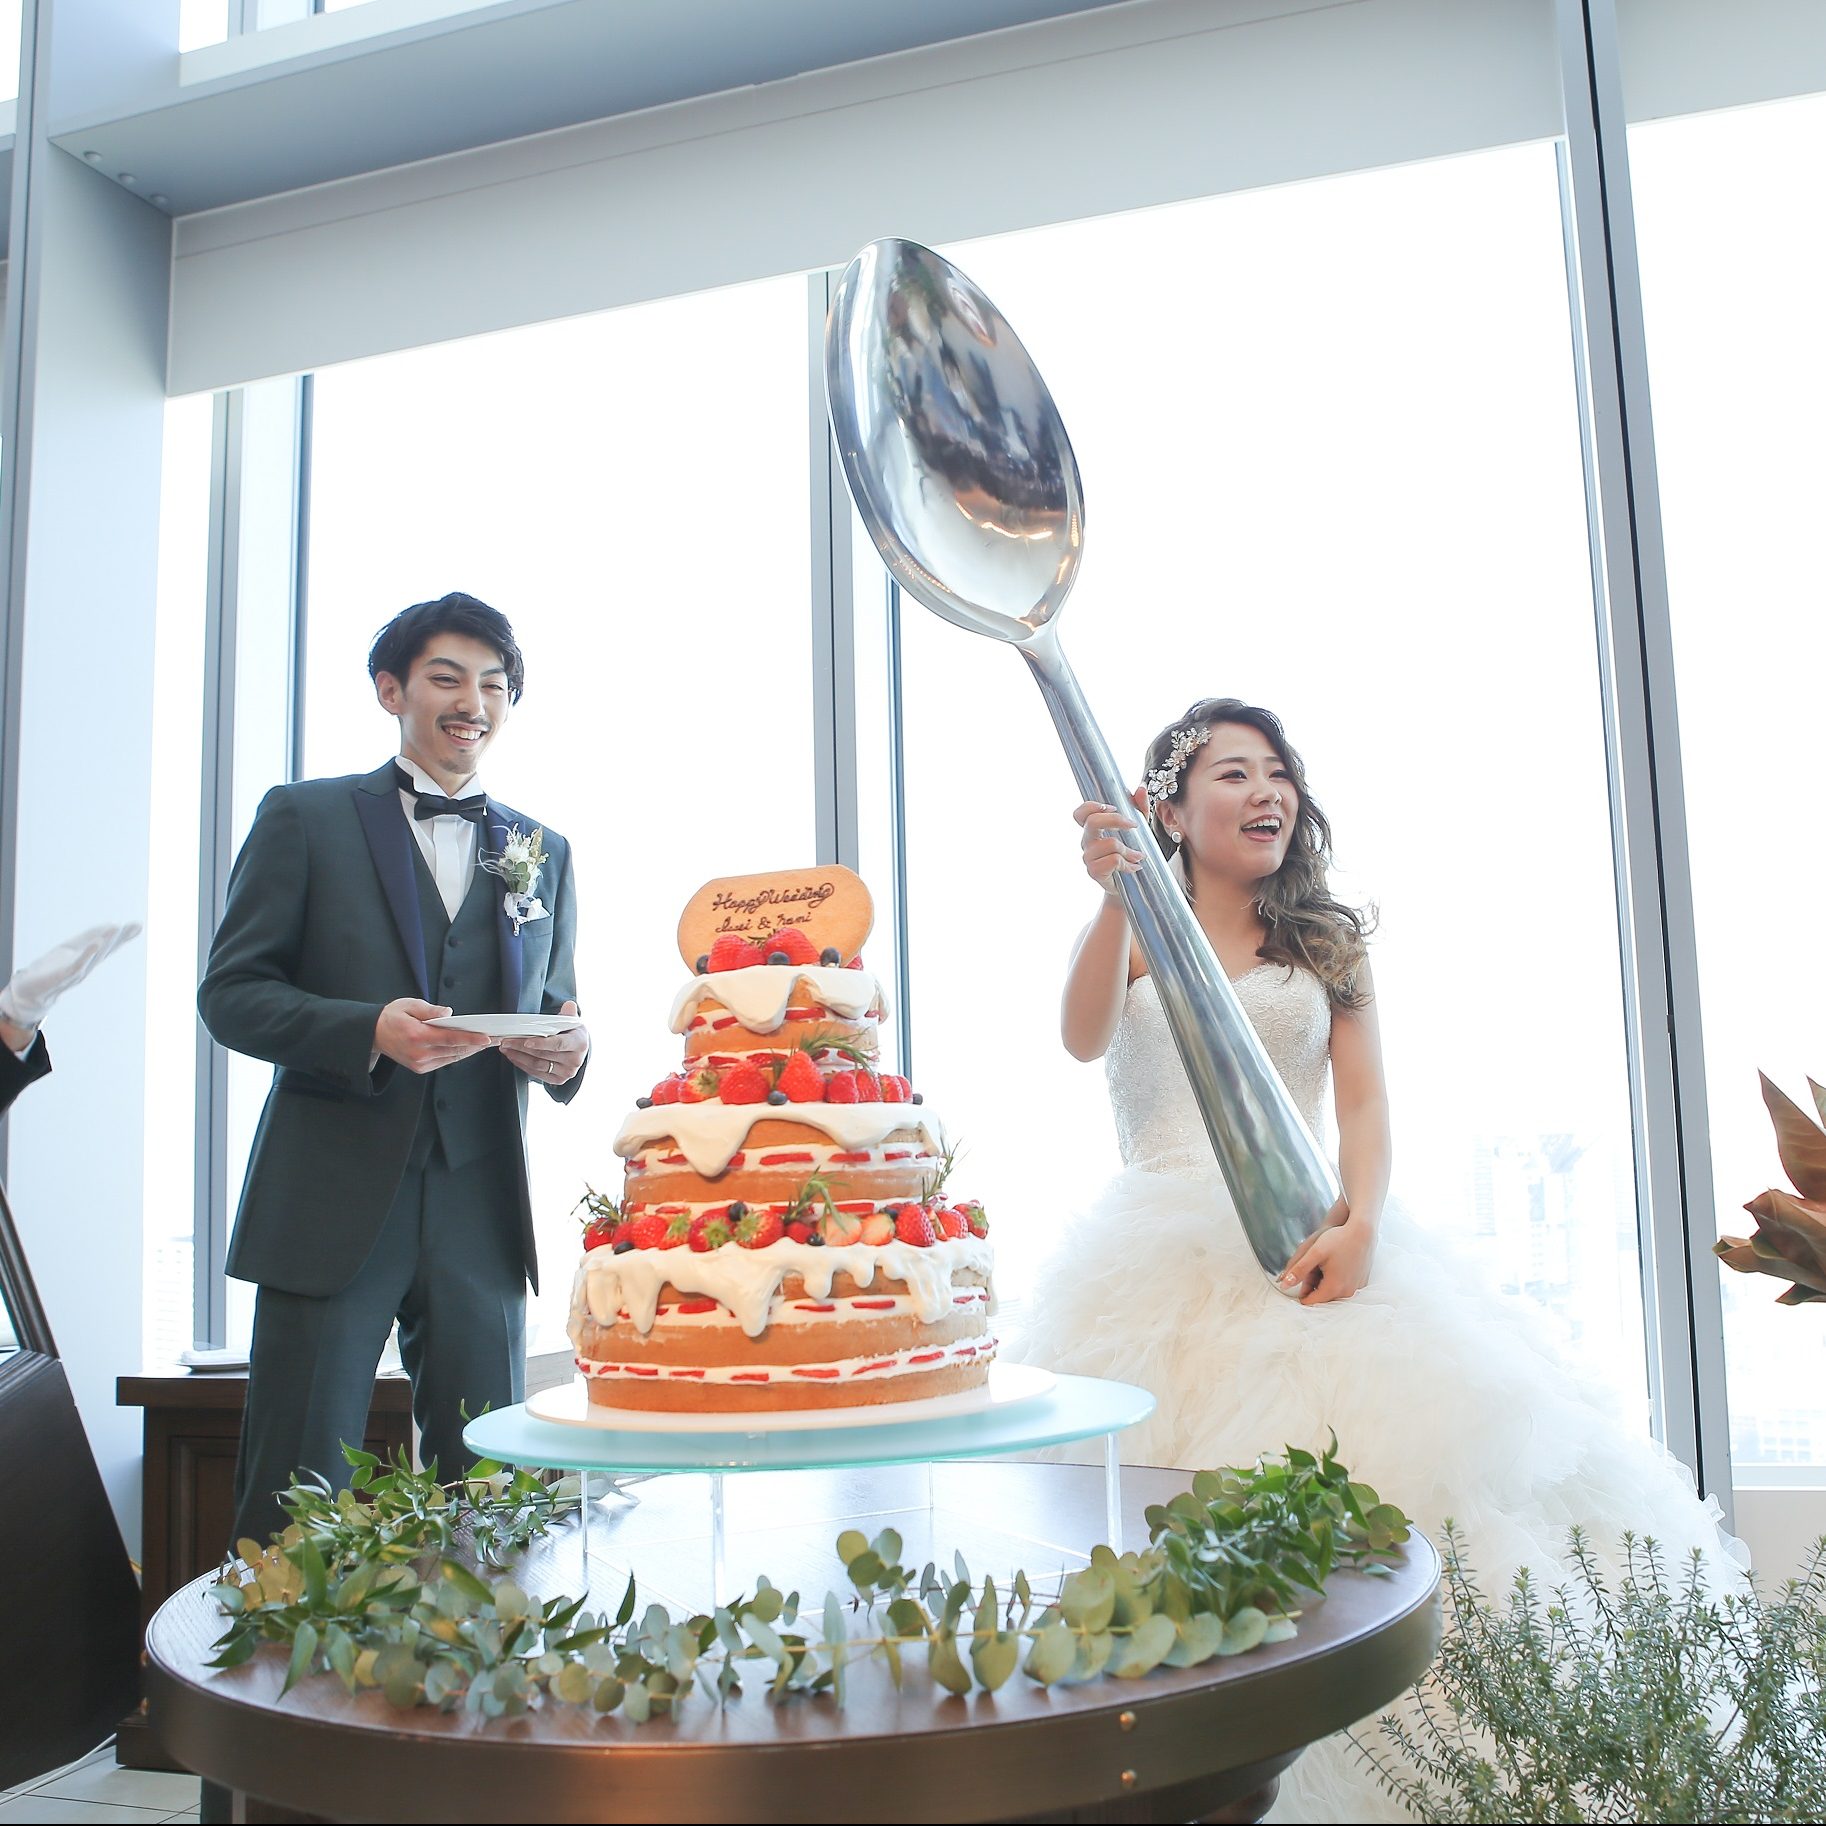 ビッグスプーン ファーストバイト 結婚式 | chicshabu.com